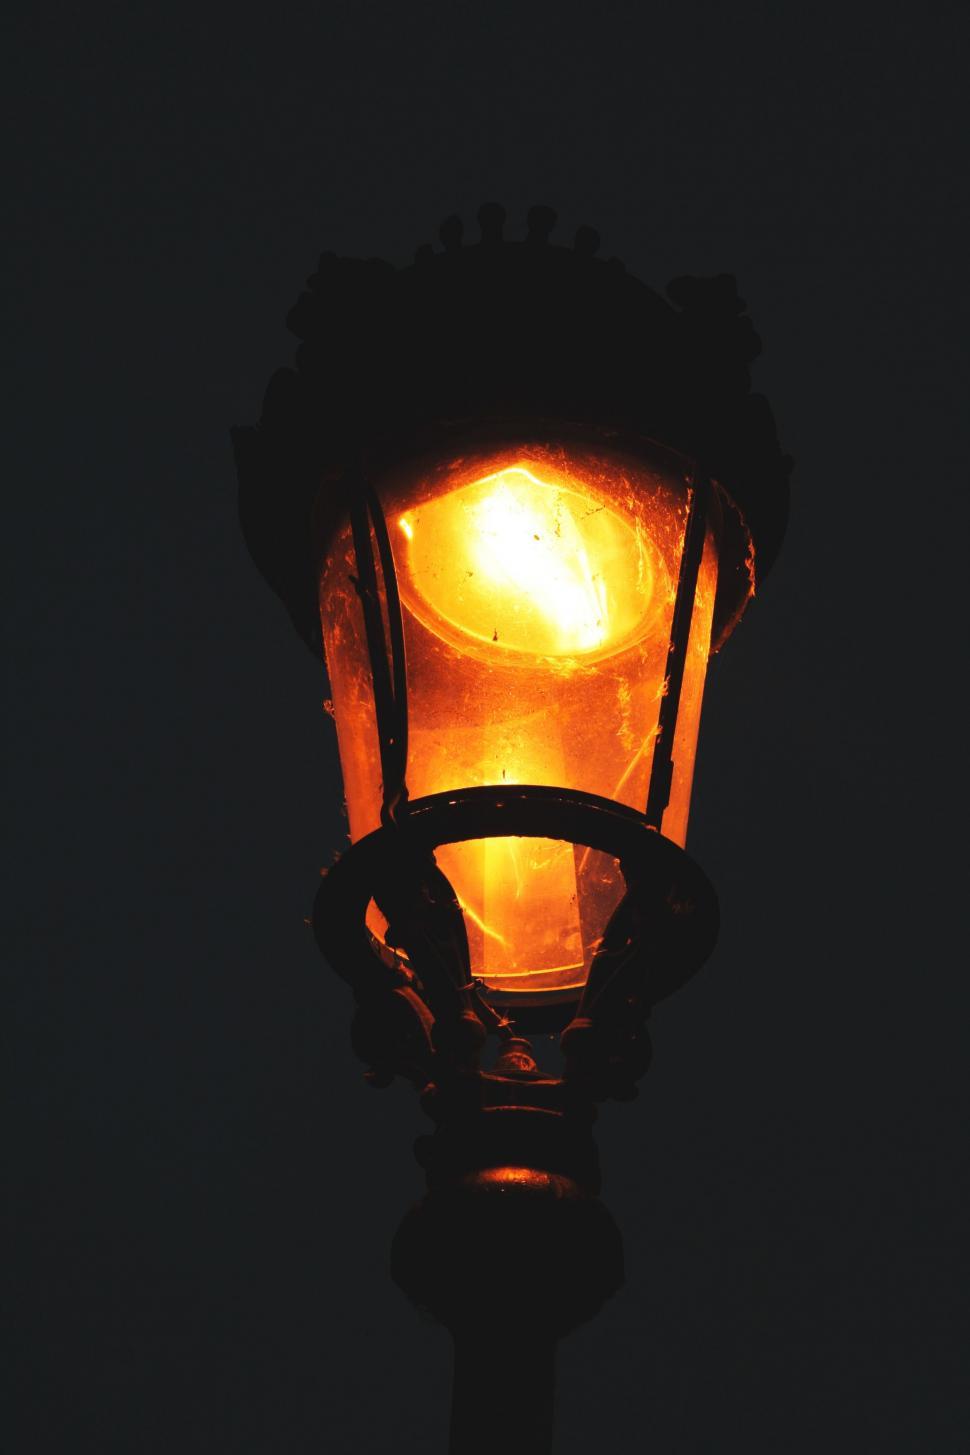 Free Image of Lamp Post Lantern 